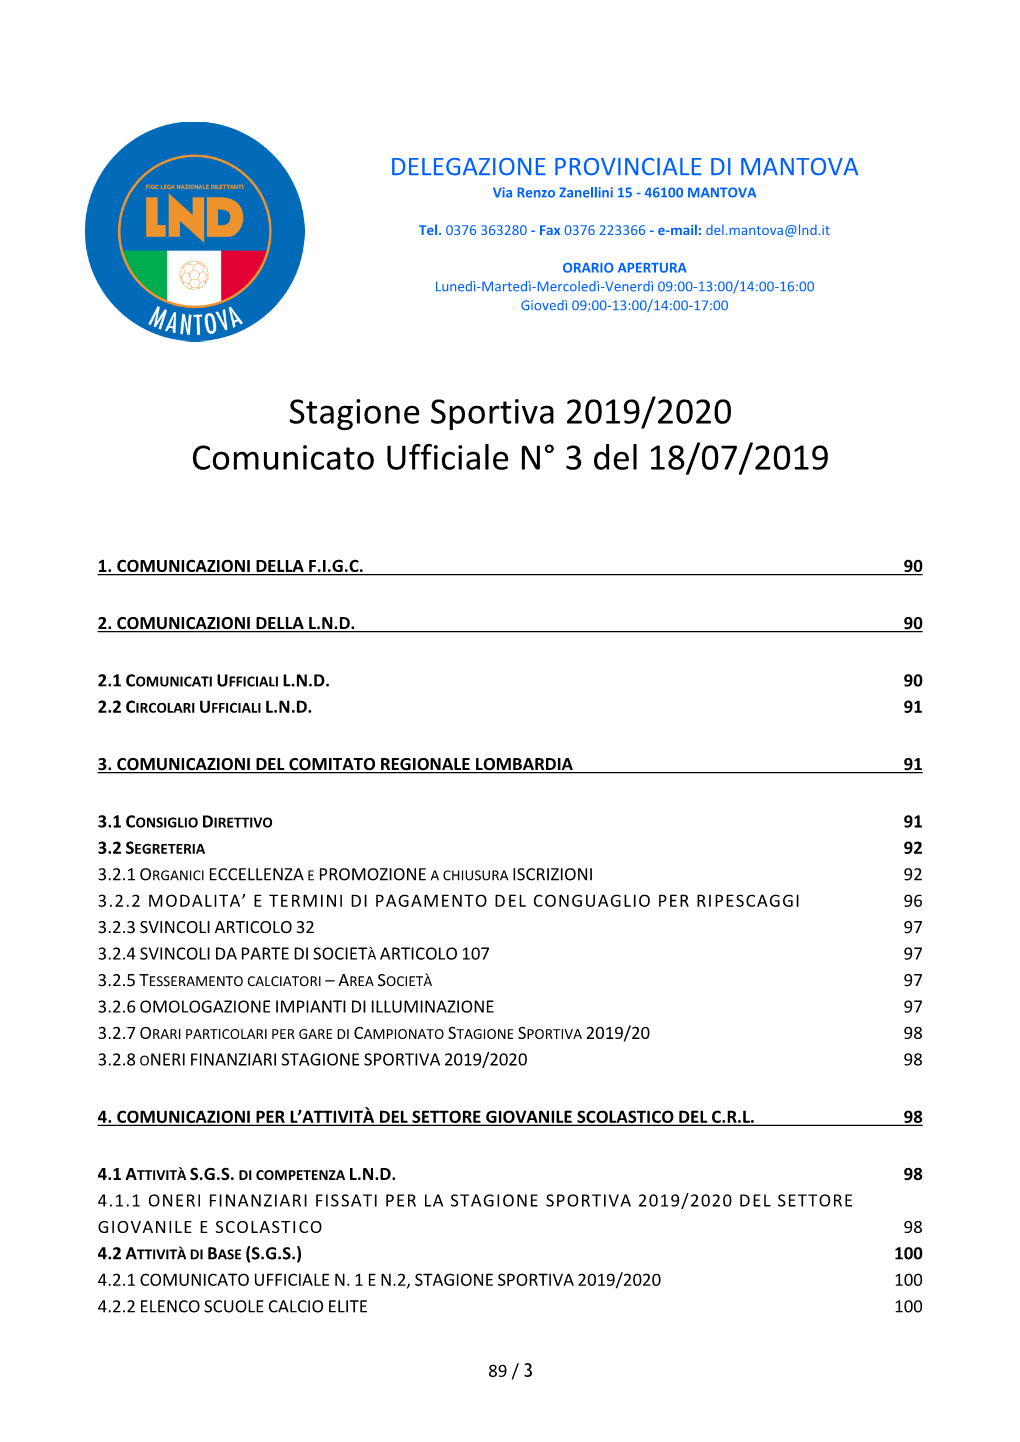 Stagione Sportiva 2019/2020 Comunicato Ufficiale N° 3 Del 18/07/2019